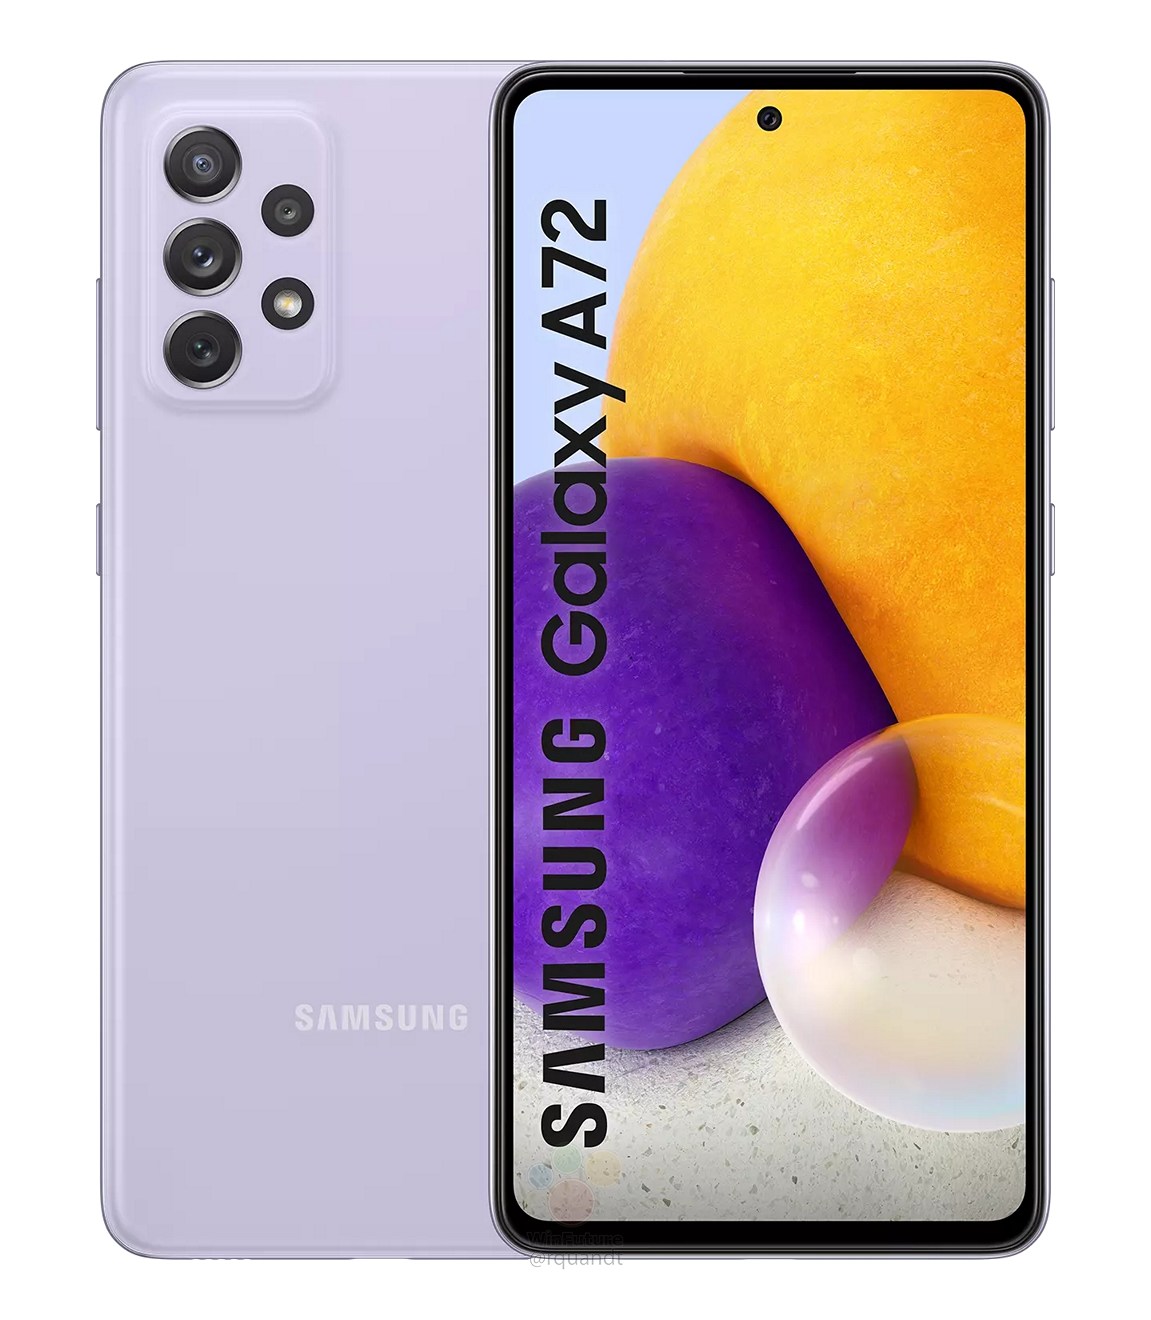 Samsung-Galaxy-A72-1613212914-0-0.jpg